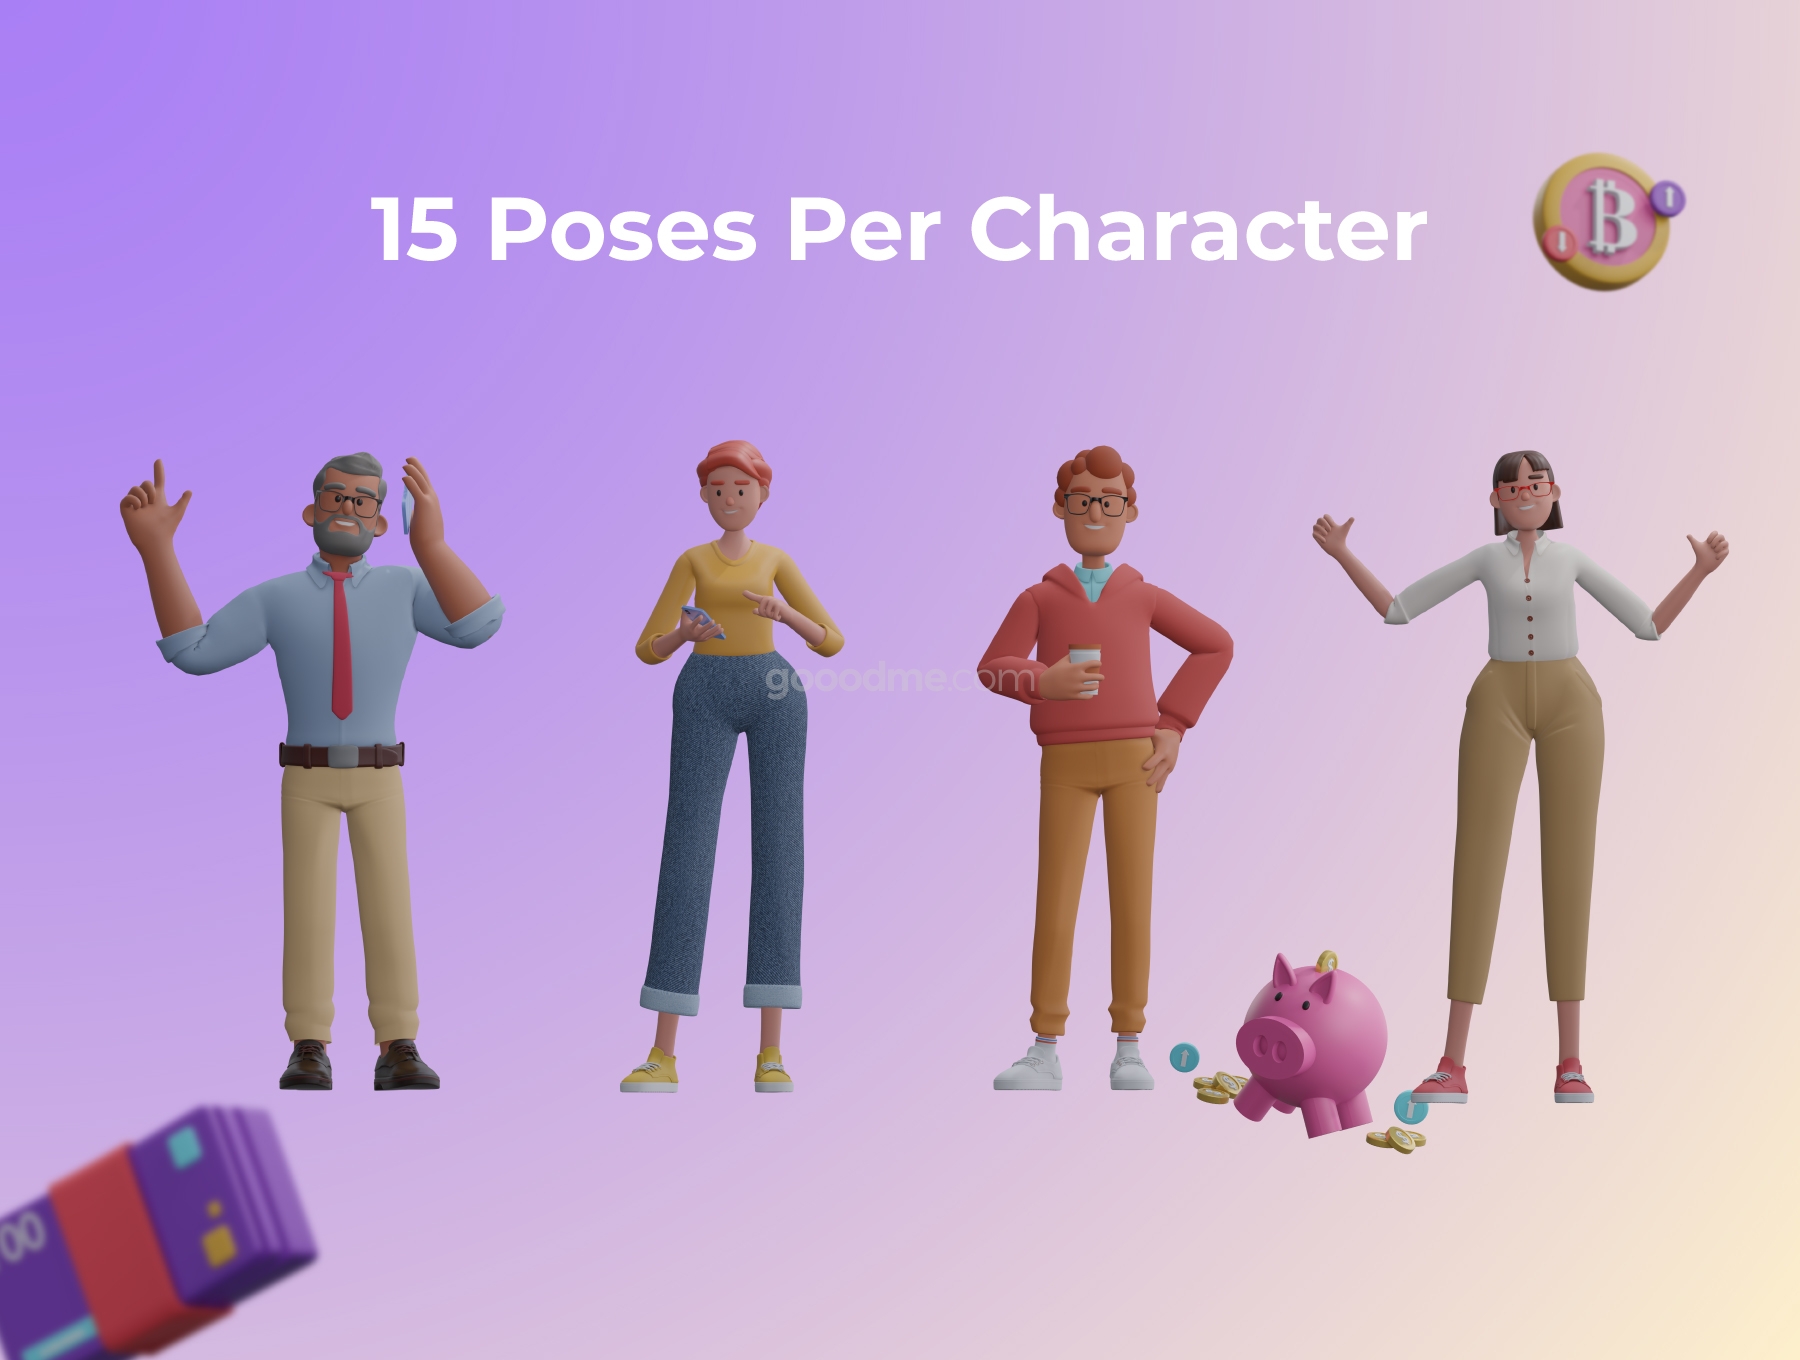 金融 3D 人物插图图标素材Financial 3D Character Illustration Pack